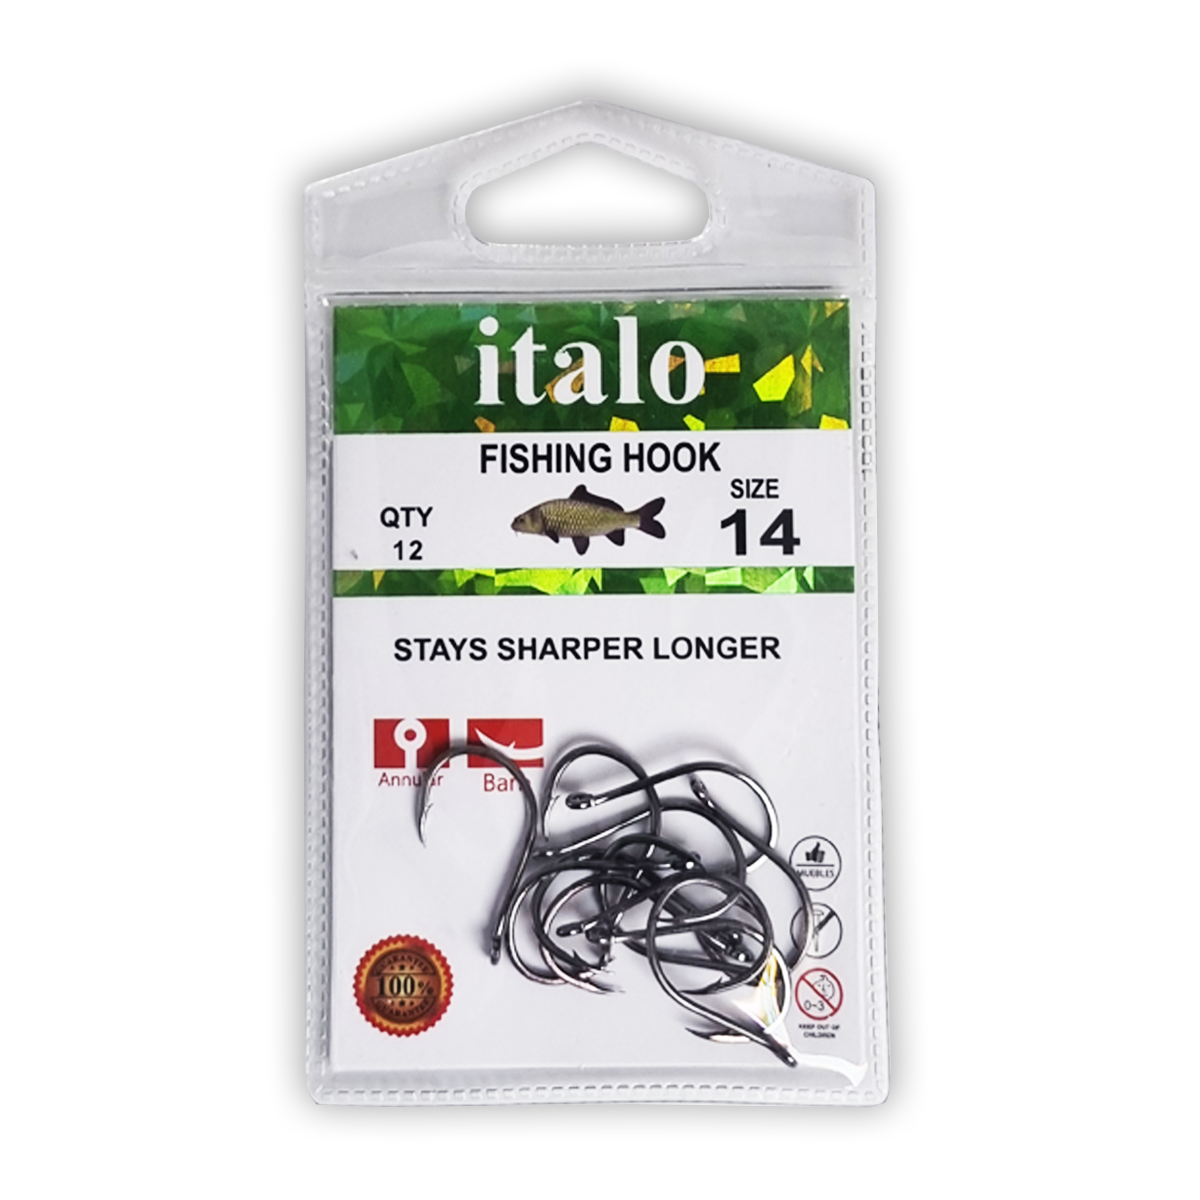 Fishing Hooks, Stay Sharper Longer, Pack of 10pcs - Size 16 - Italo